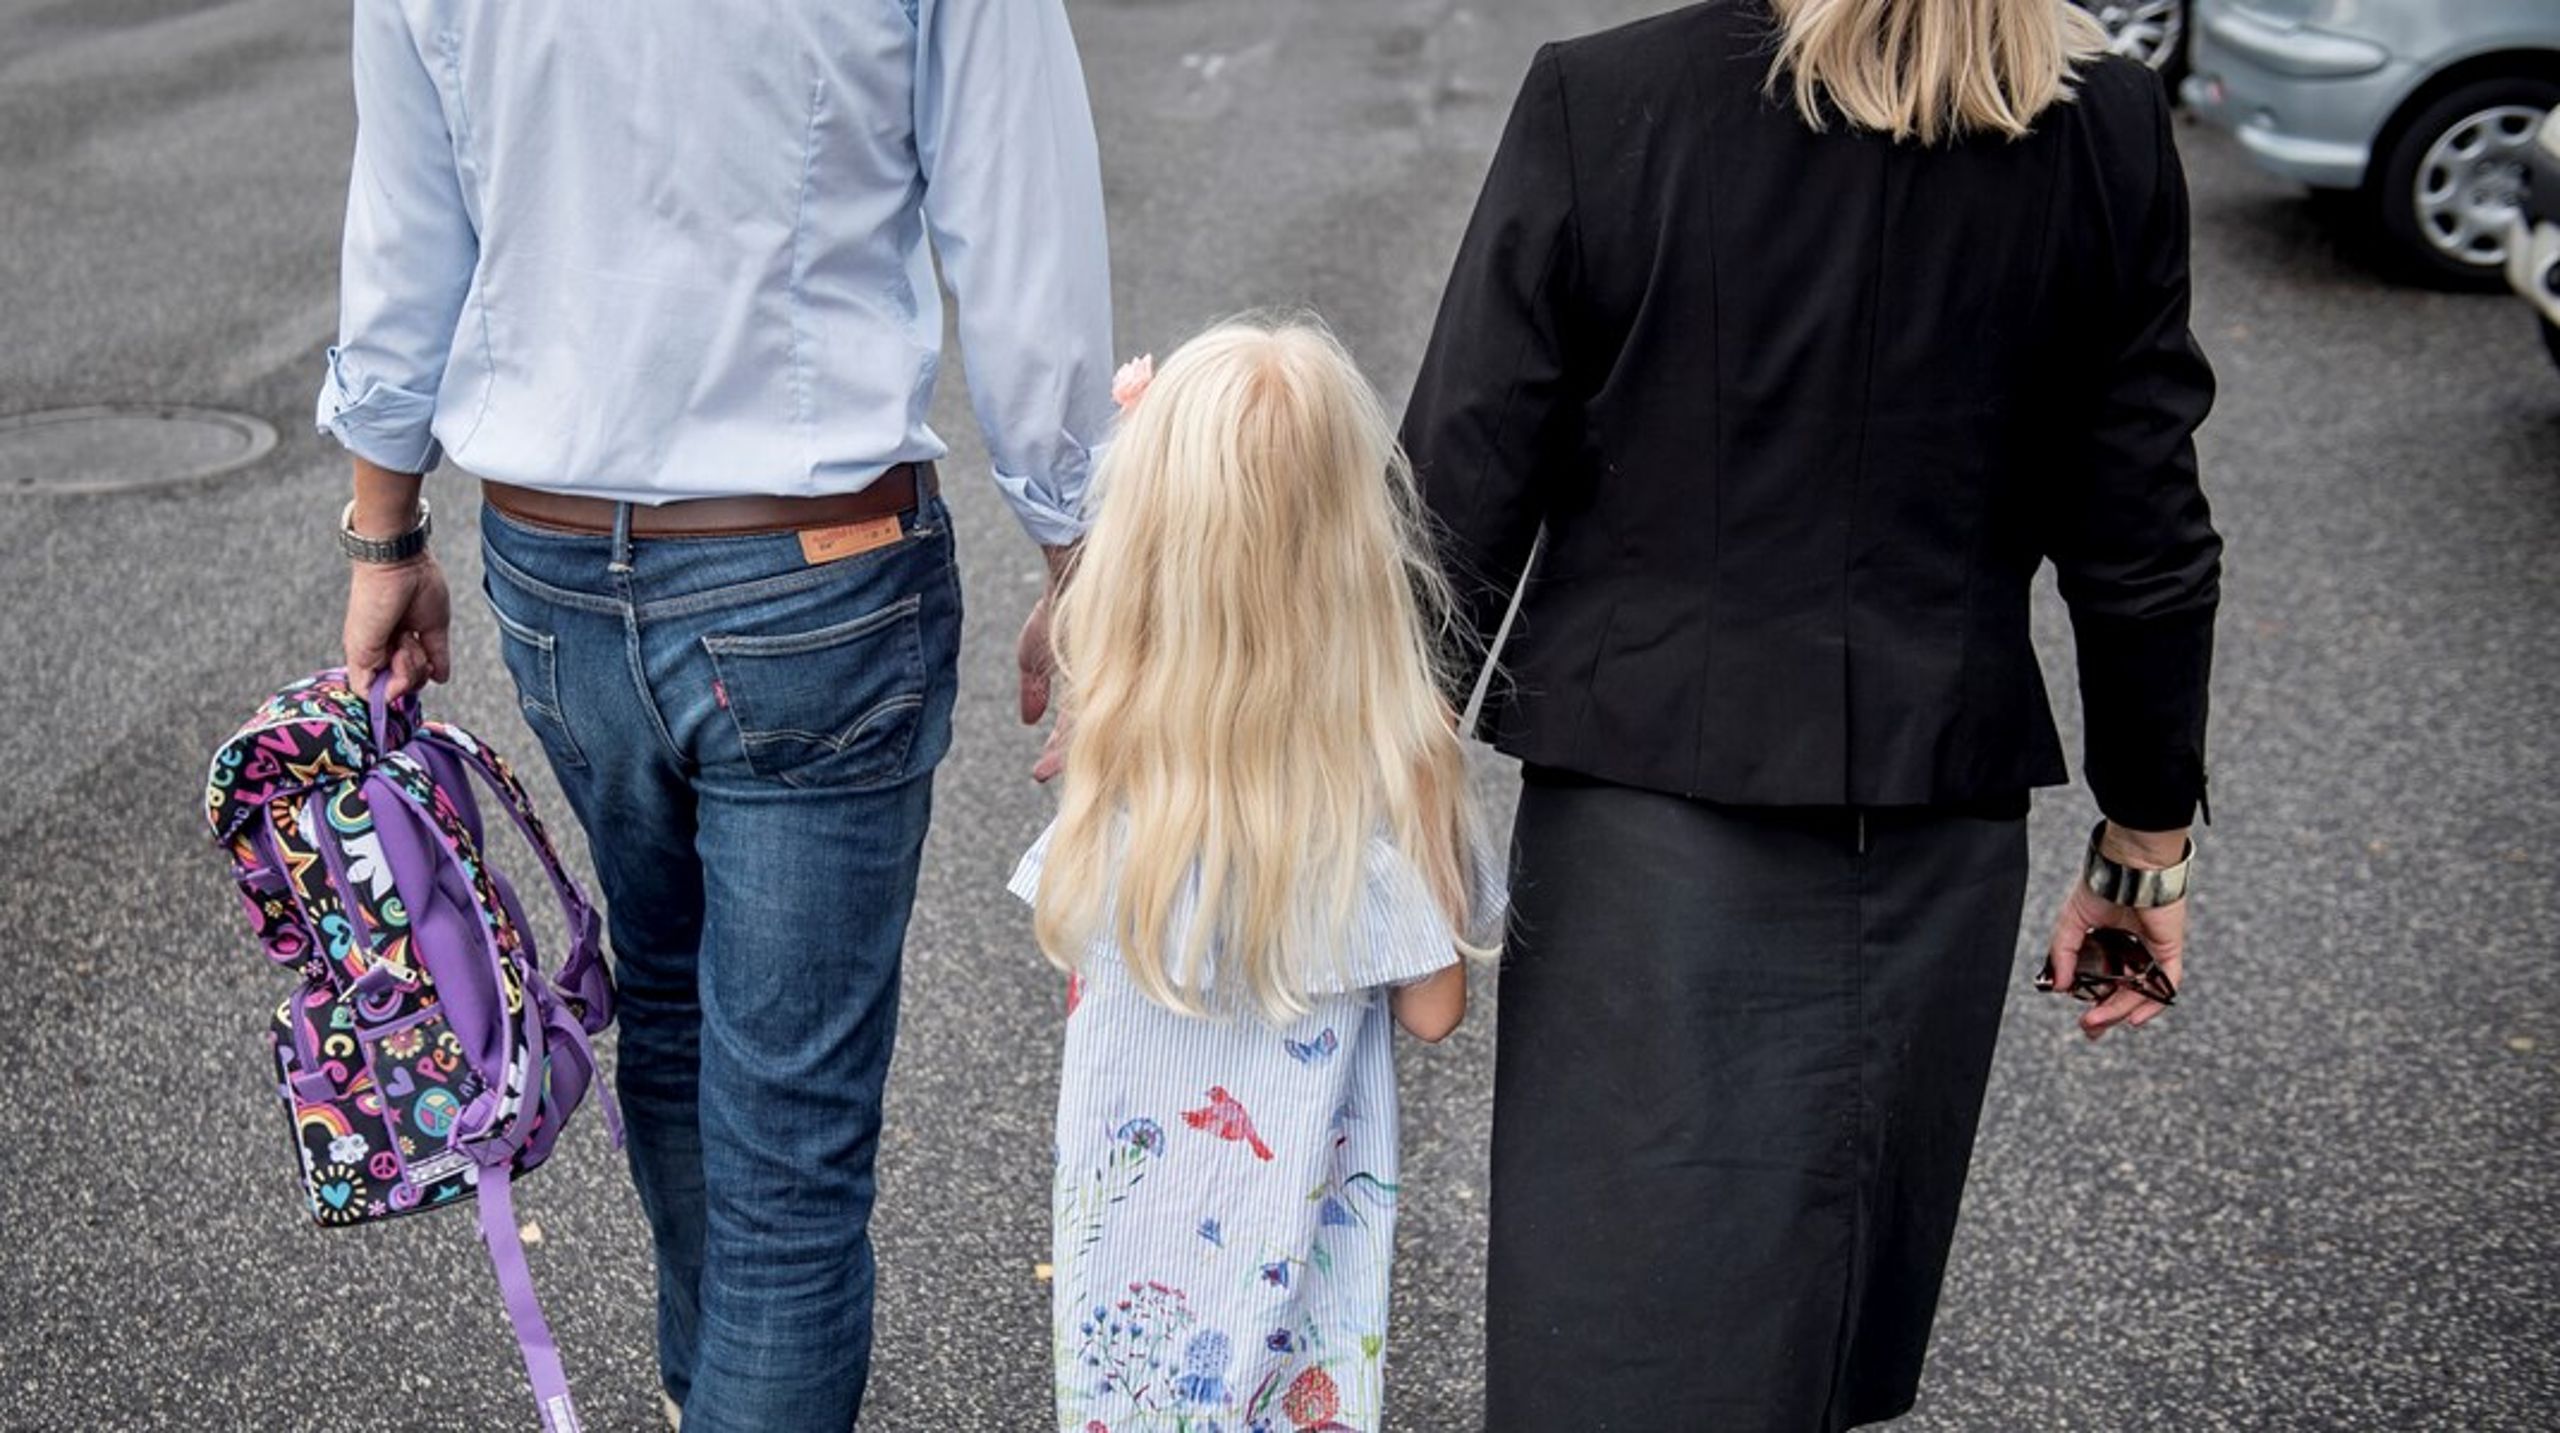 Hvis vi som forældre, professionelle og politikere ønsker at støtte op om børn, både i deres almindelige hverdag og når livet bøvler, må børns egne oplevelser af dilemmaer og udfordringer inddrages, skriver Anja Marschall.